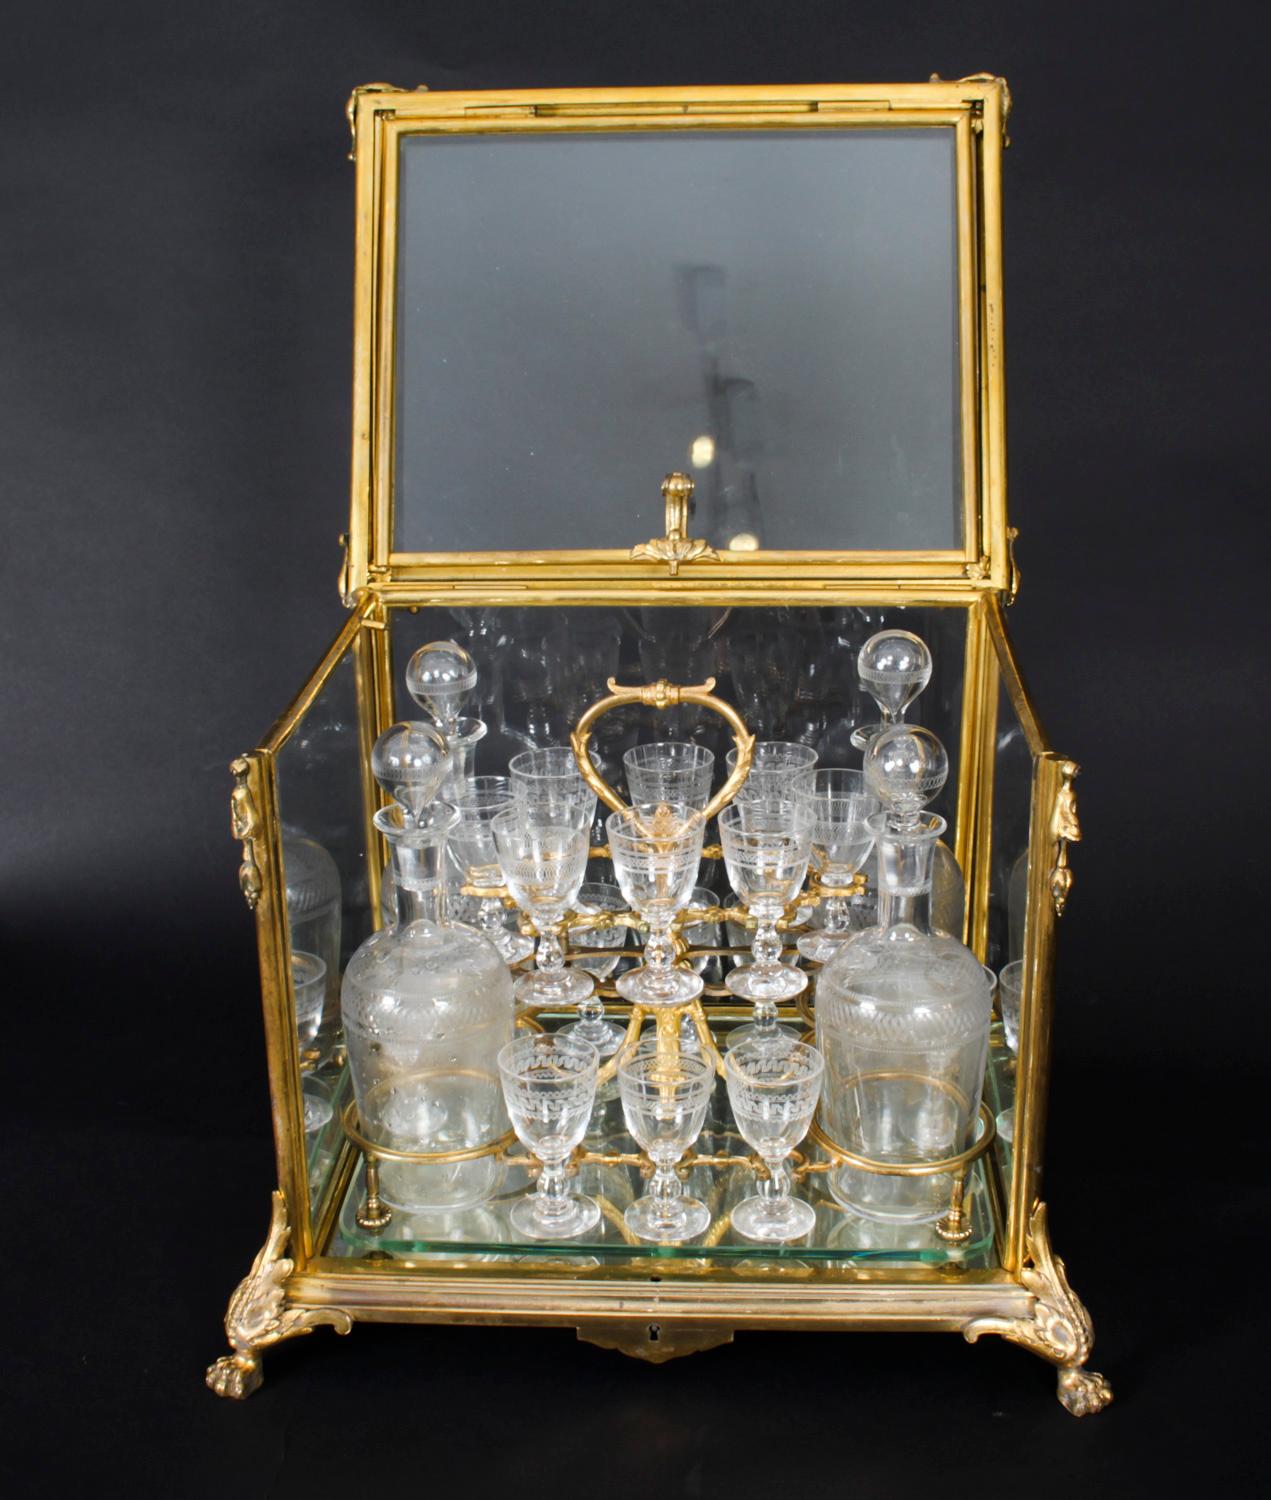 Il s'agit d'un exquis Bacarrat français Napoléon III ormolu et verre Cave a Liqueur, ou tantalus, vers 1860 en date. 

La Cave à liqueur présente un coffret en bronze doré avec des panneaux en verre et un couvercle à bascule entourant un cadre en